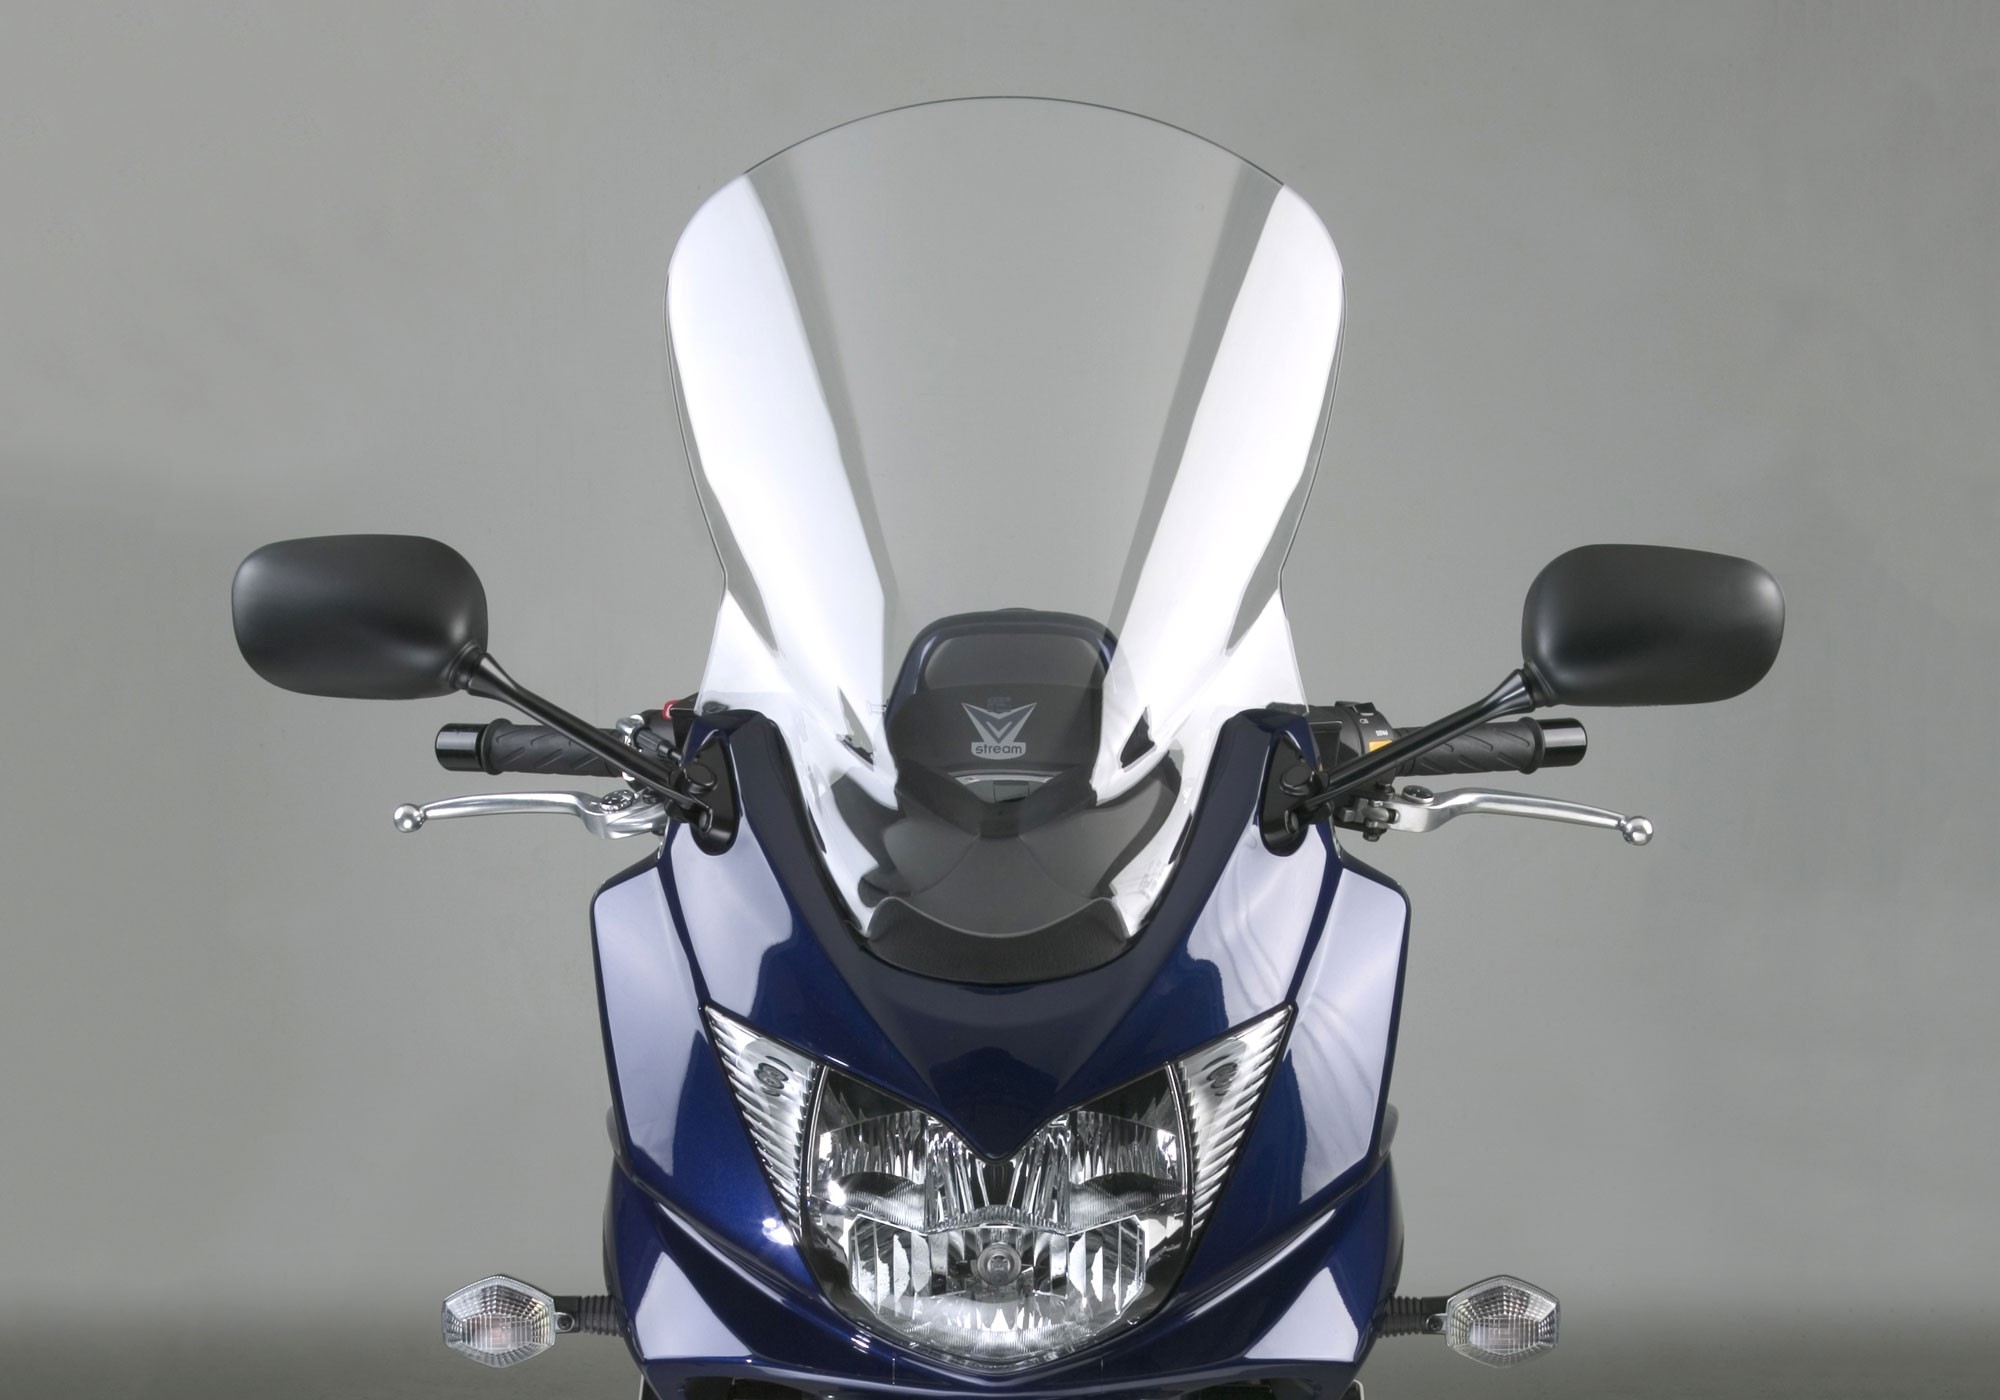 NATIONAL CYCLE Motorradscheibe VStream klar ABE passt für Suzuki GSF 1250 S Bandit